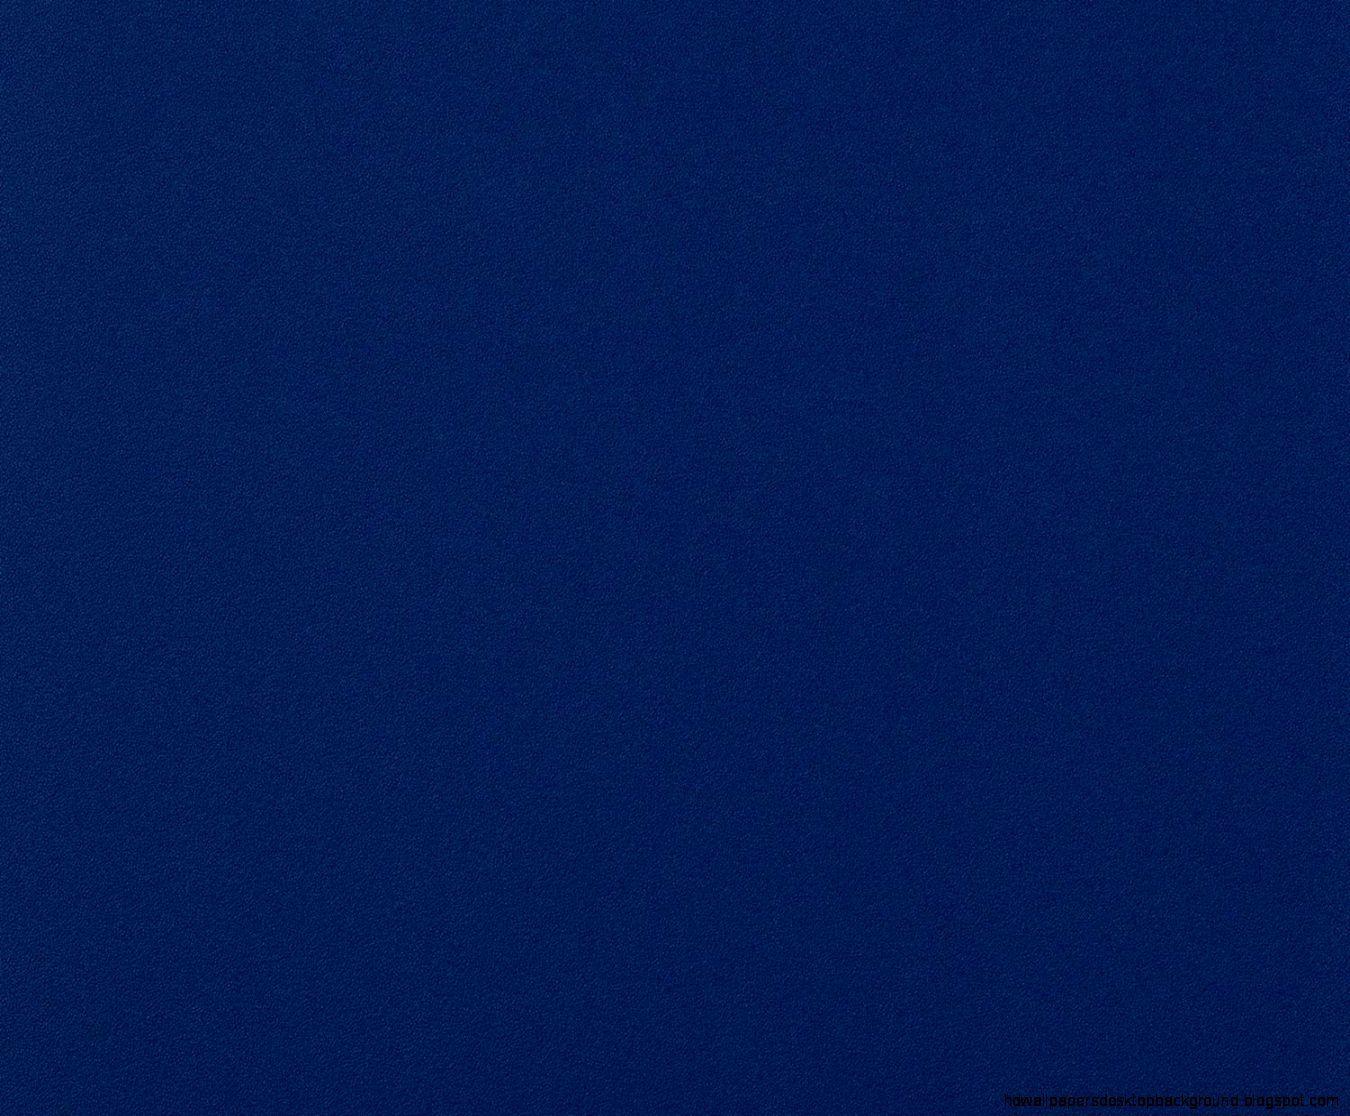 Solid Dark Blue Wallpapers - Top Những Hình Ảnh Đẹp